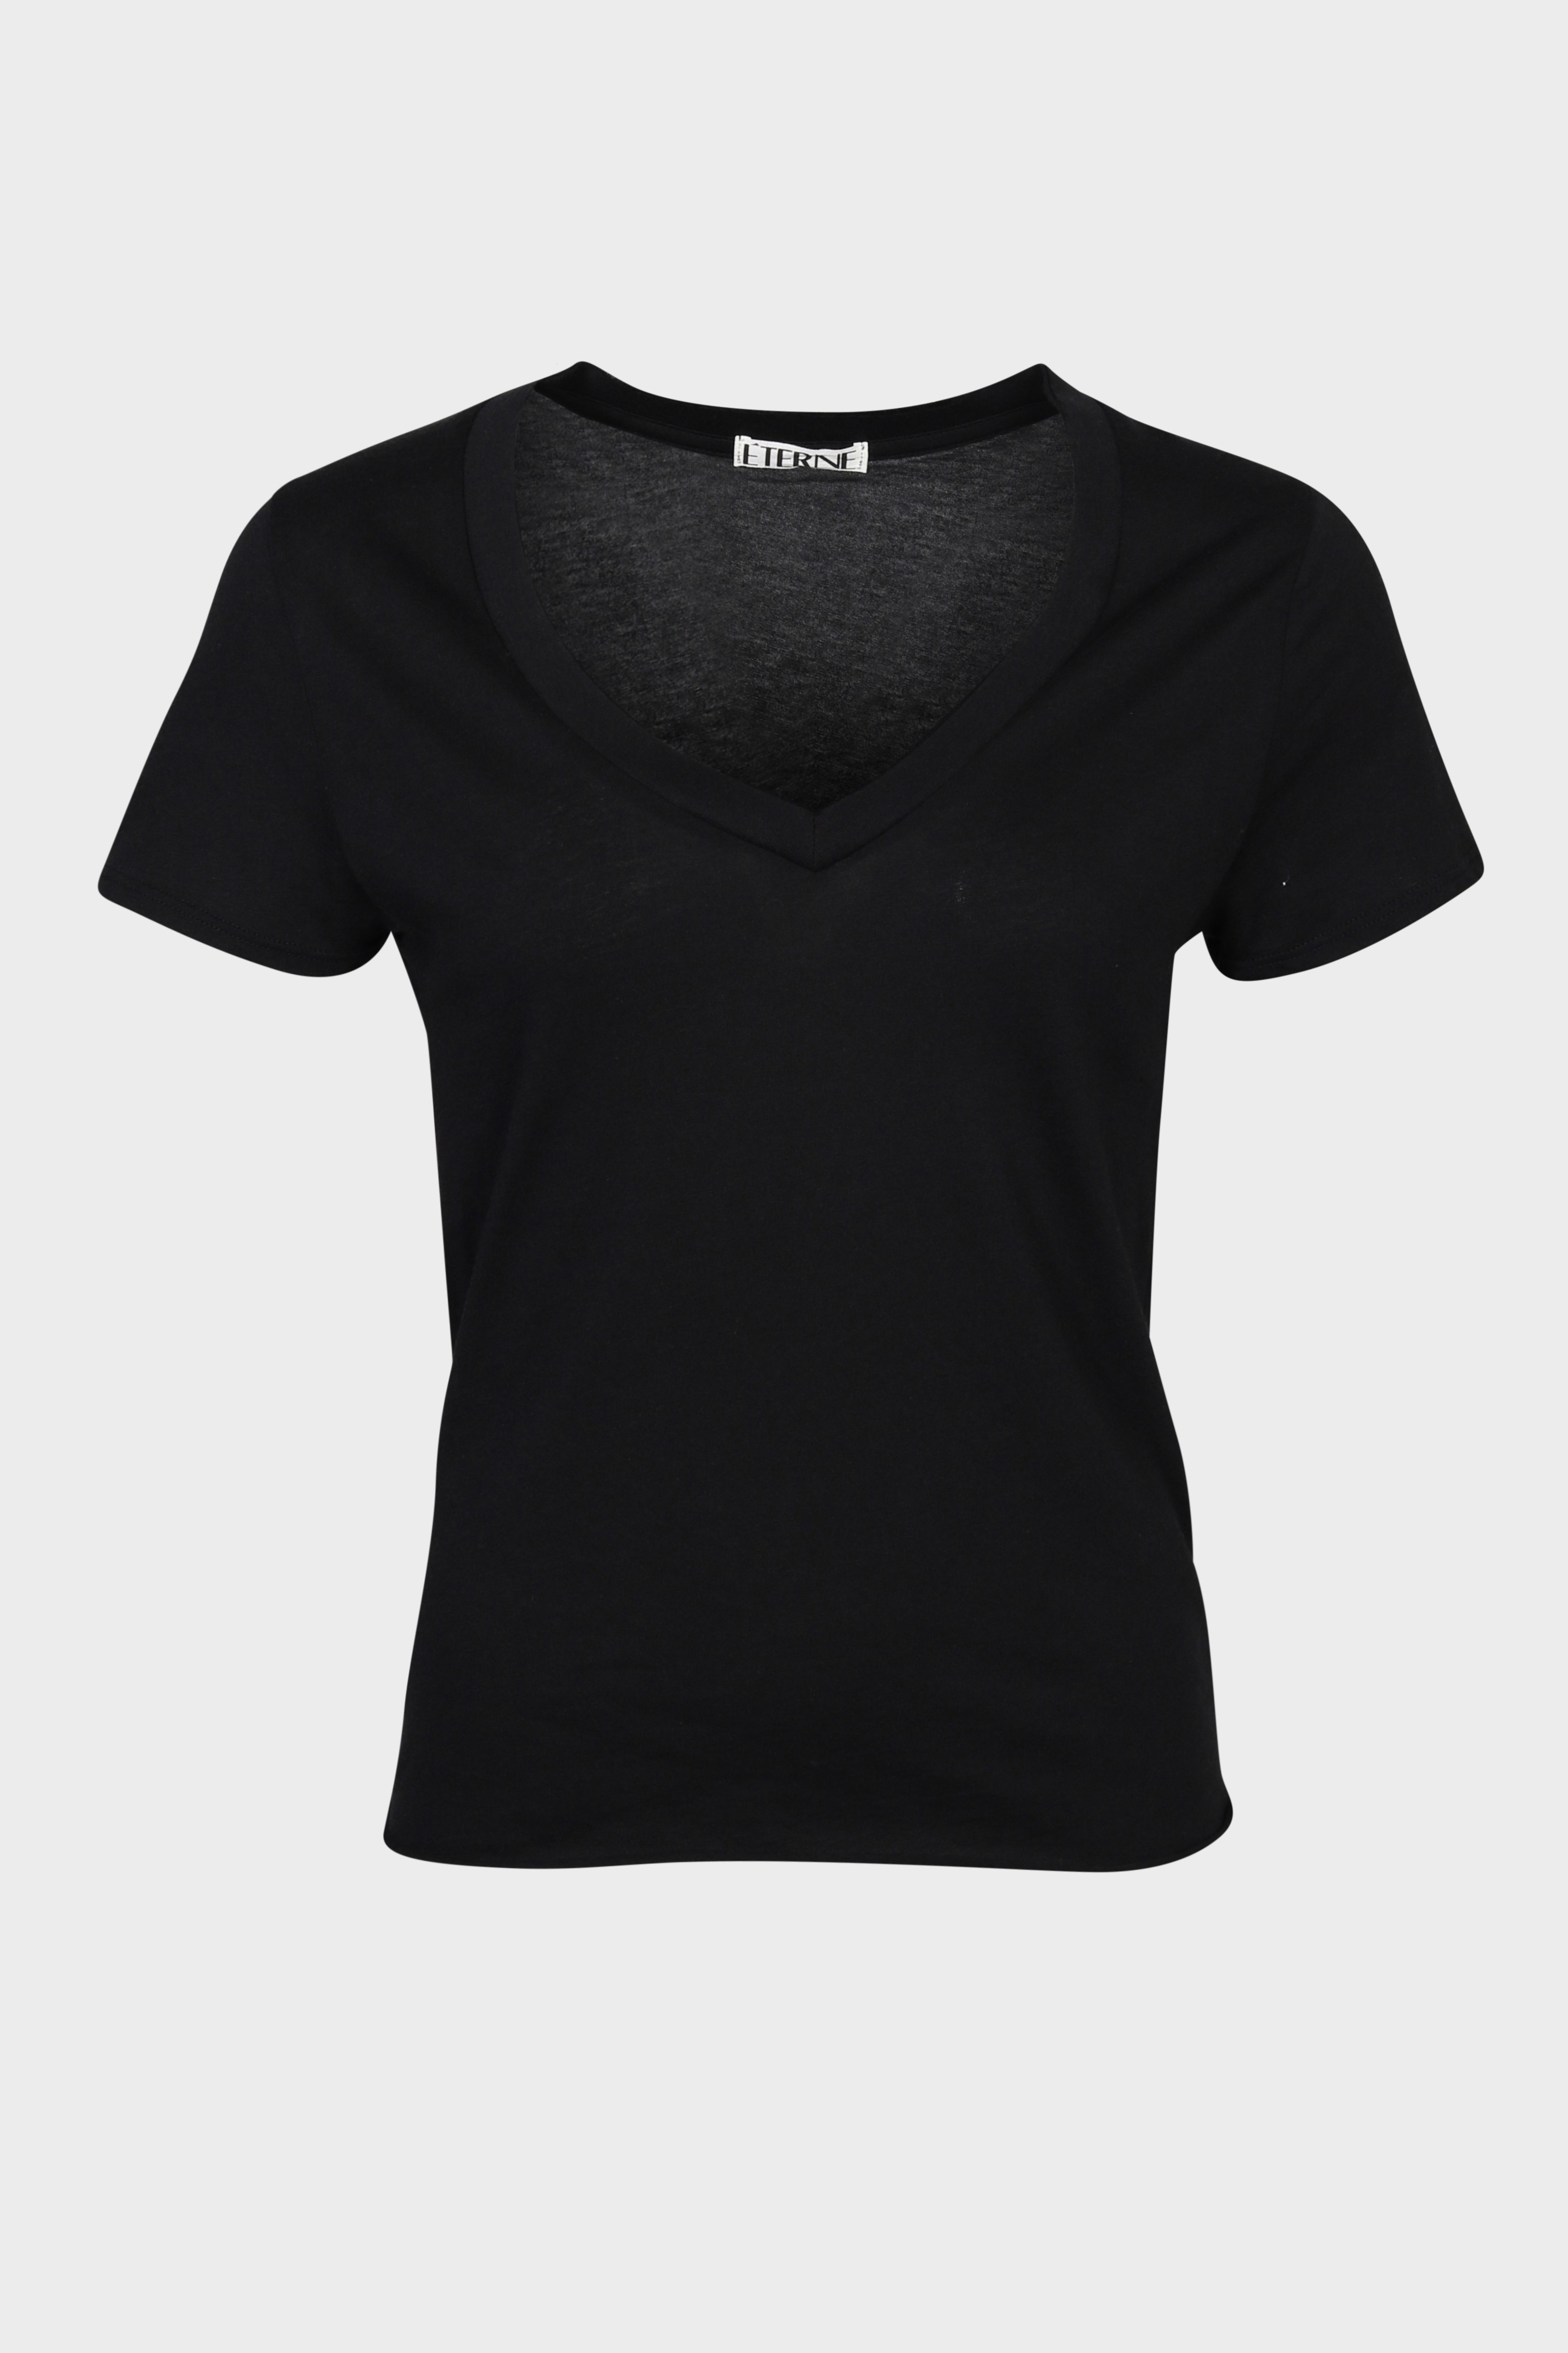 ÉTERNE V-Neck T-Shirt in Black M